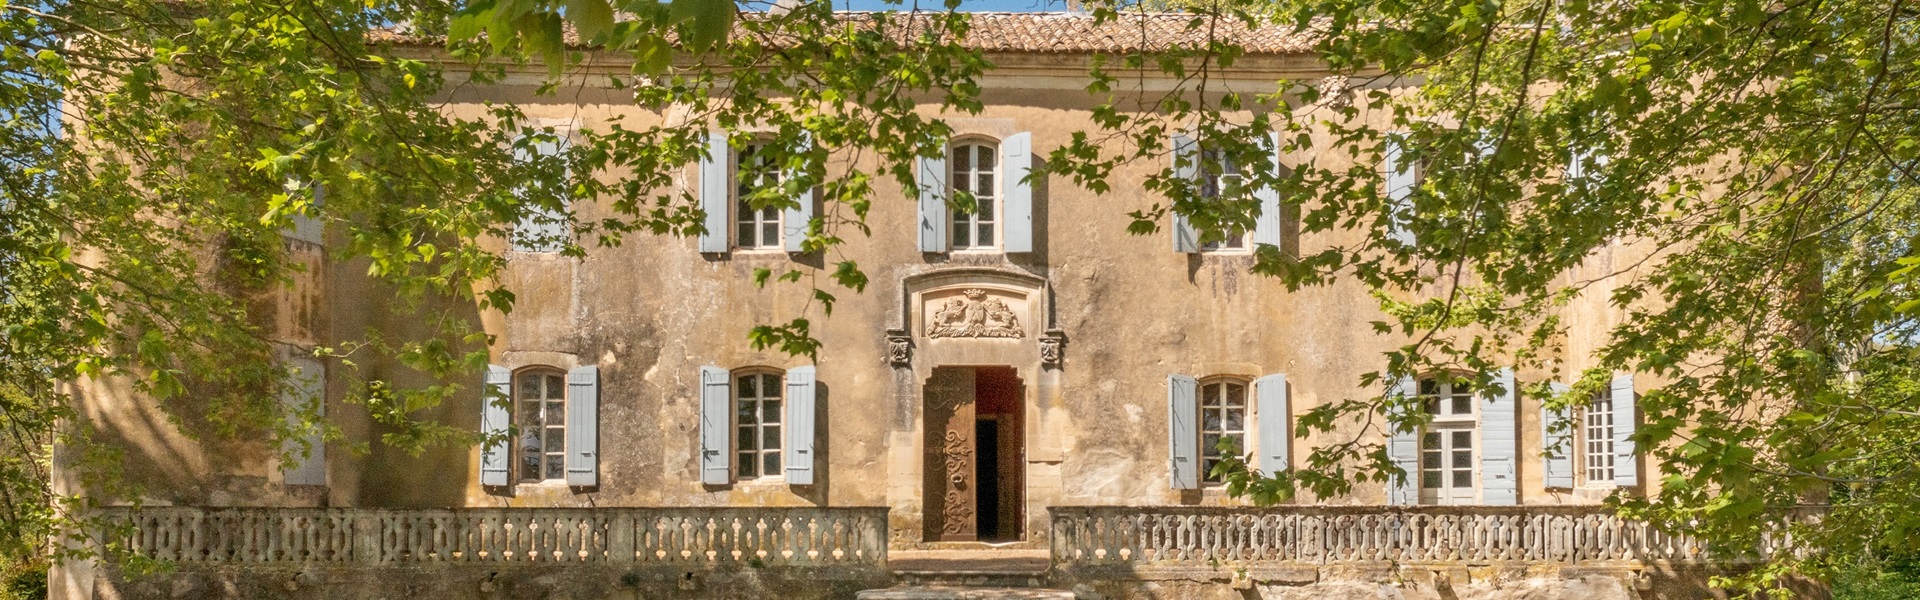 Château authentique